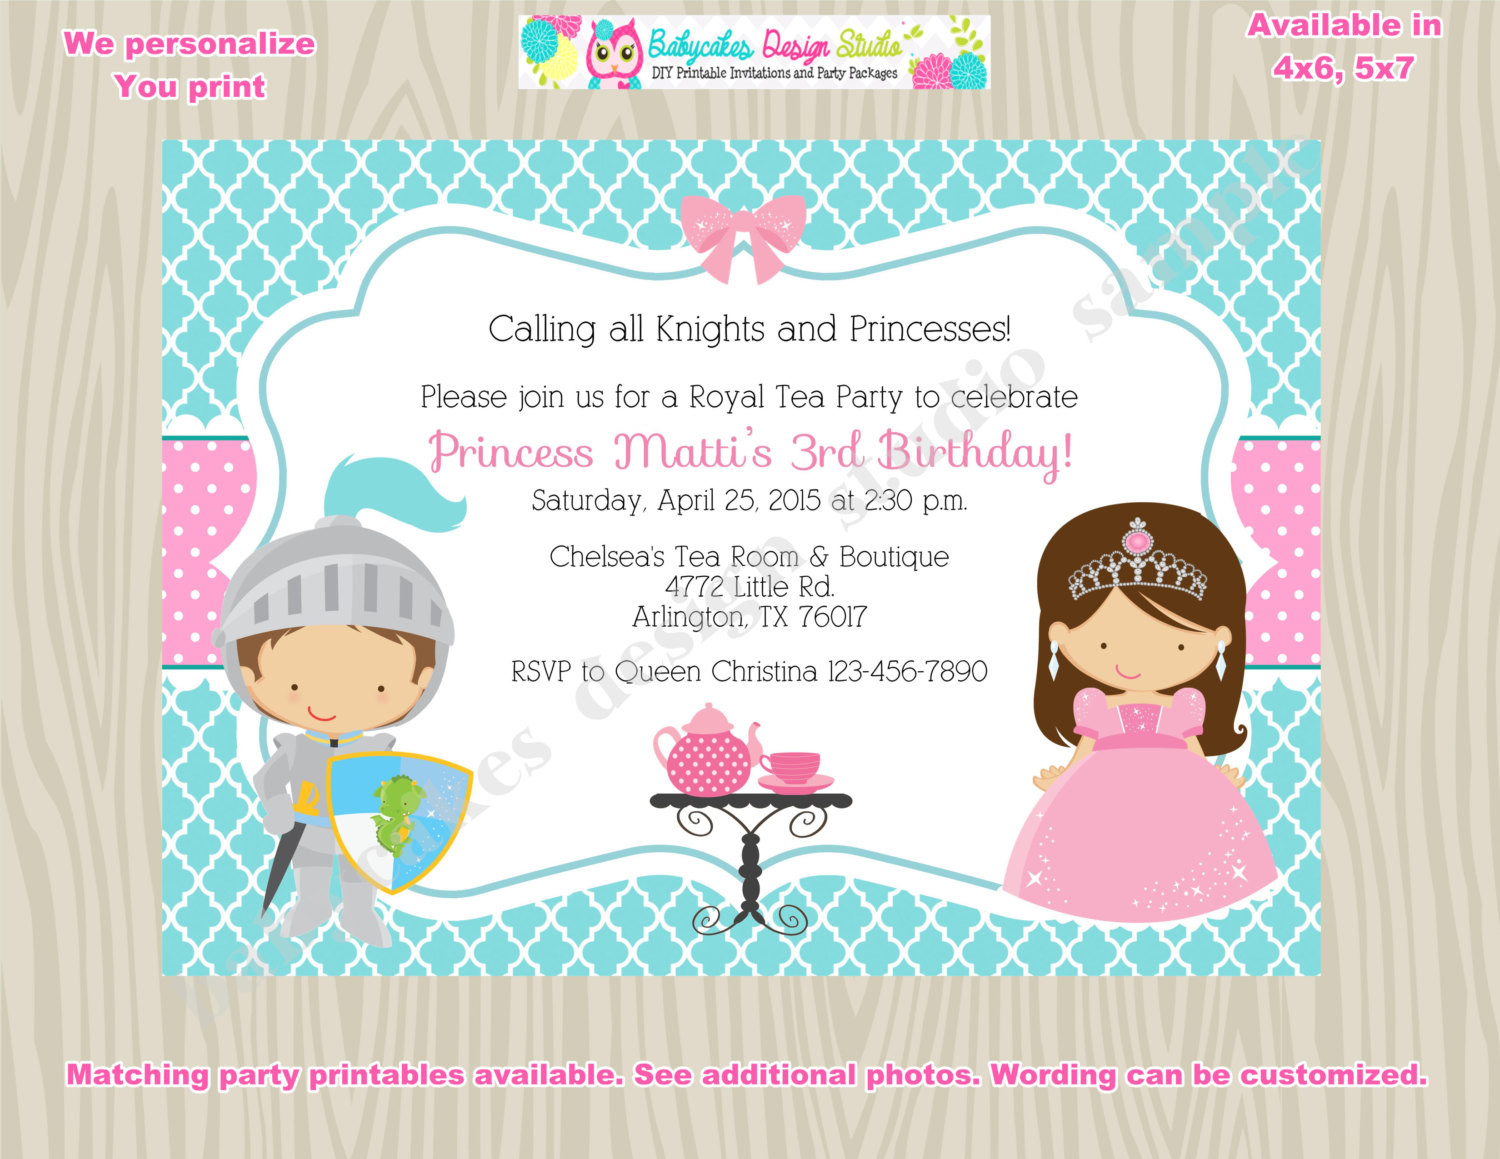 Tea Party Birthday Invitation
 Royal Tea Party Birthday Invitation invite knights and